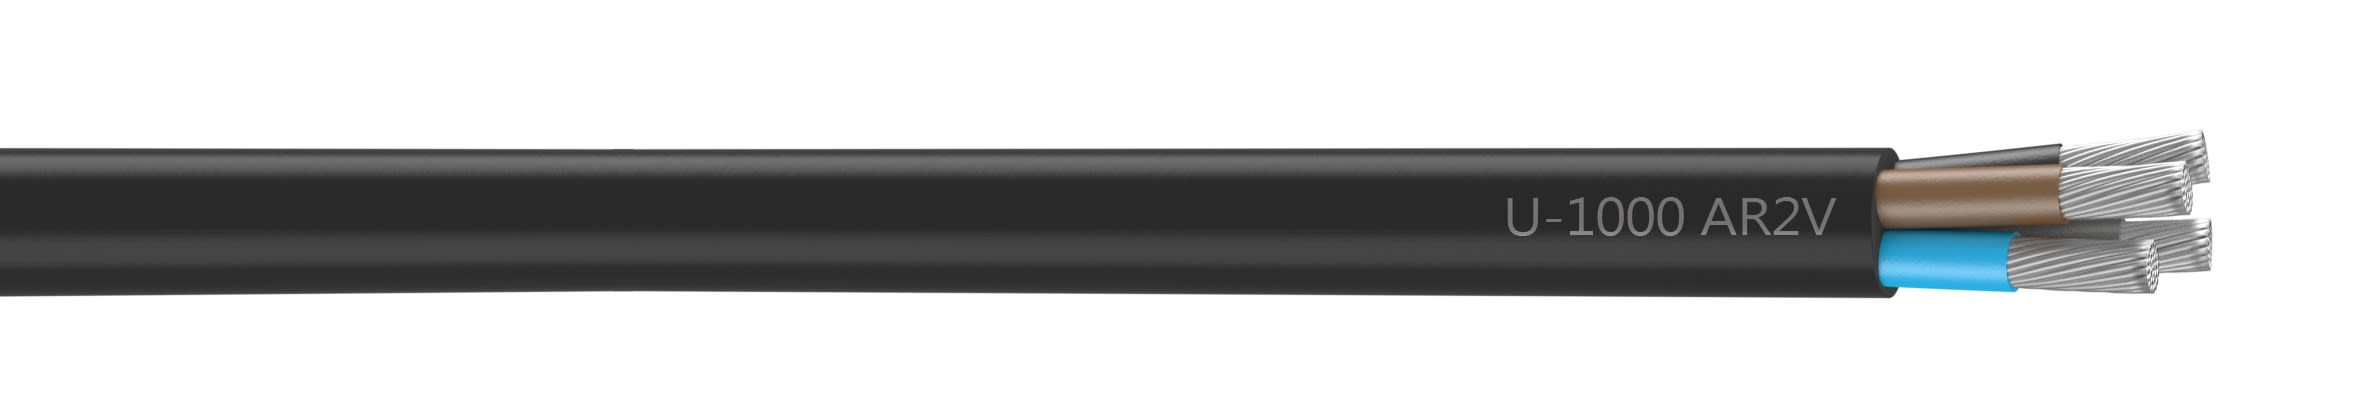 Nexans - Câble rigide U-1000 AR2V aluminium 4x25 longueur à la coupe